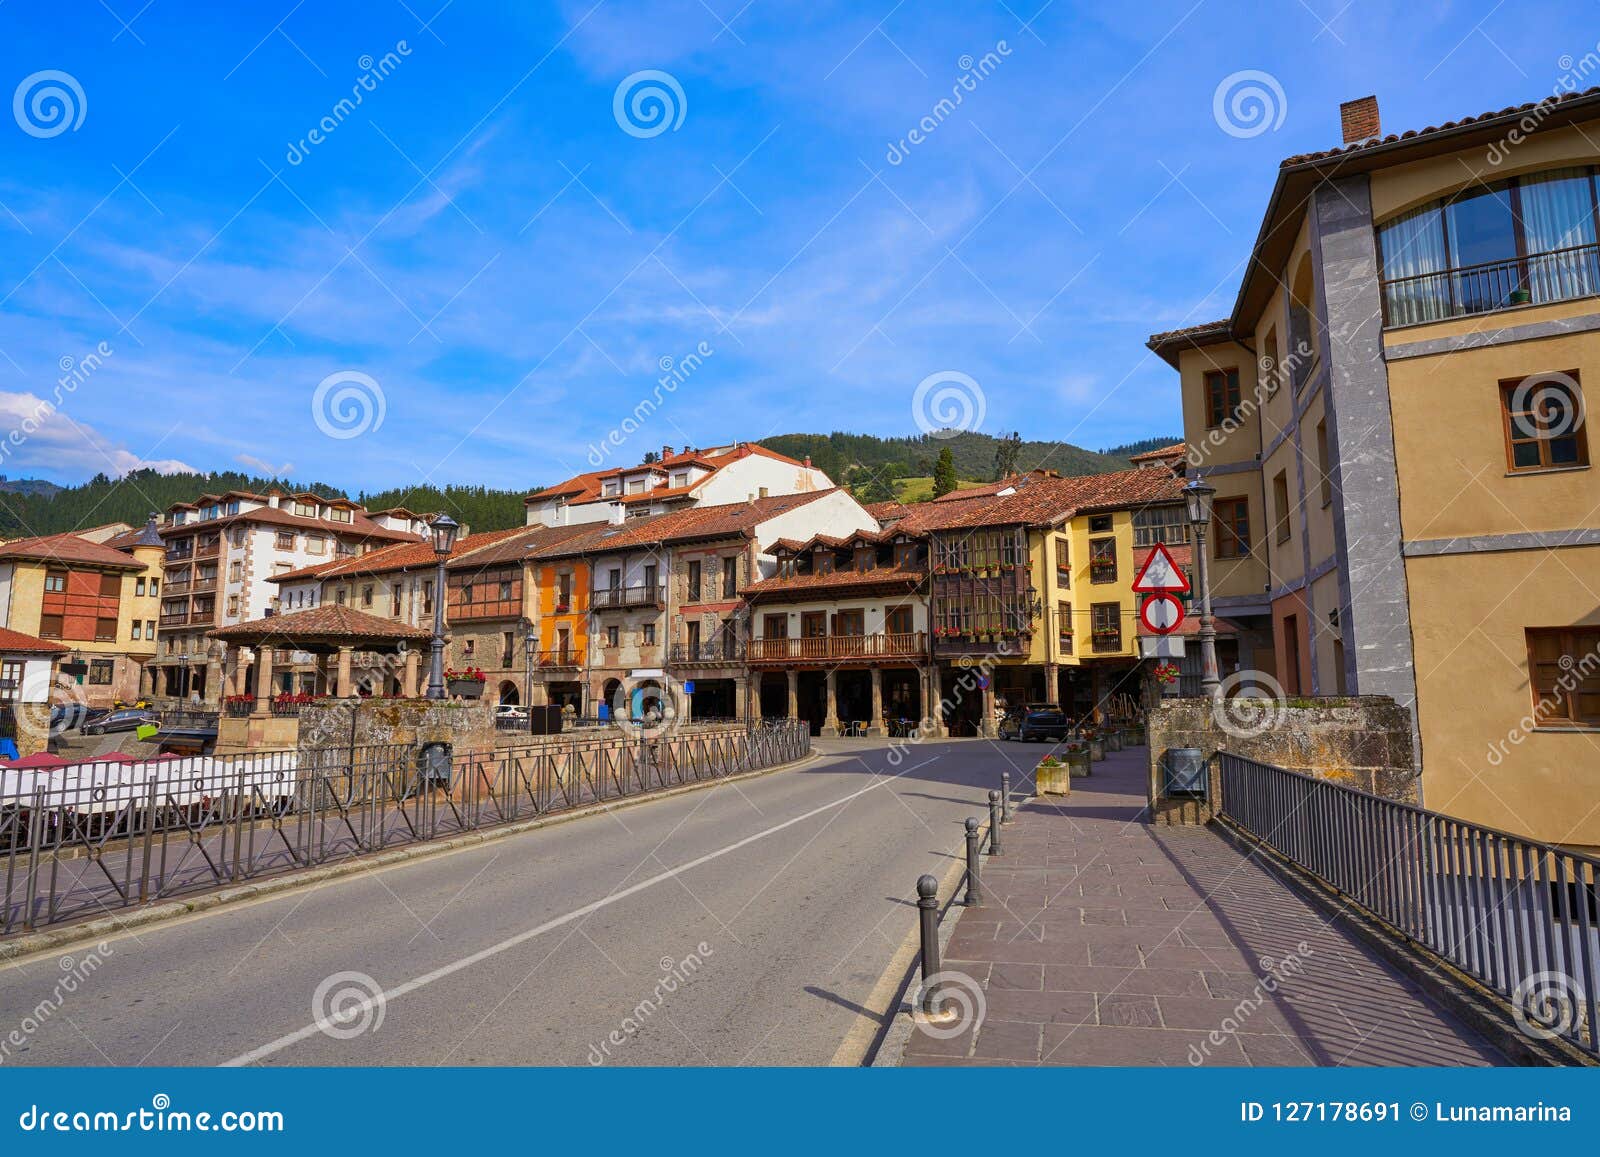 potes village facades in cantabria spain